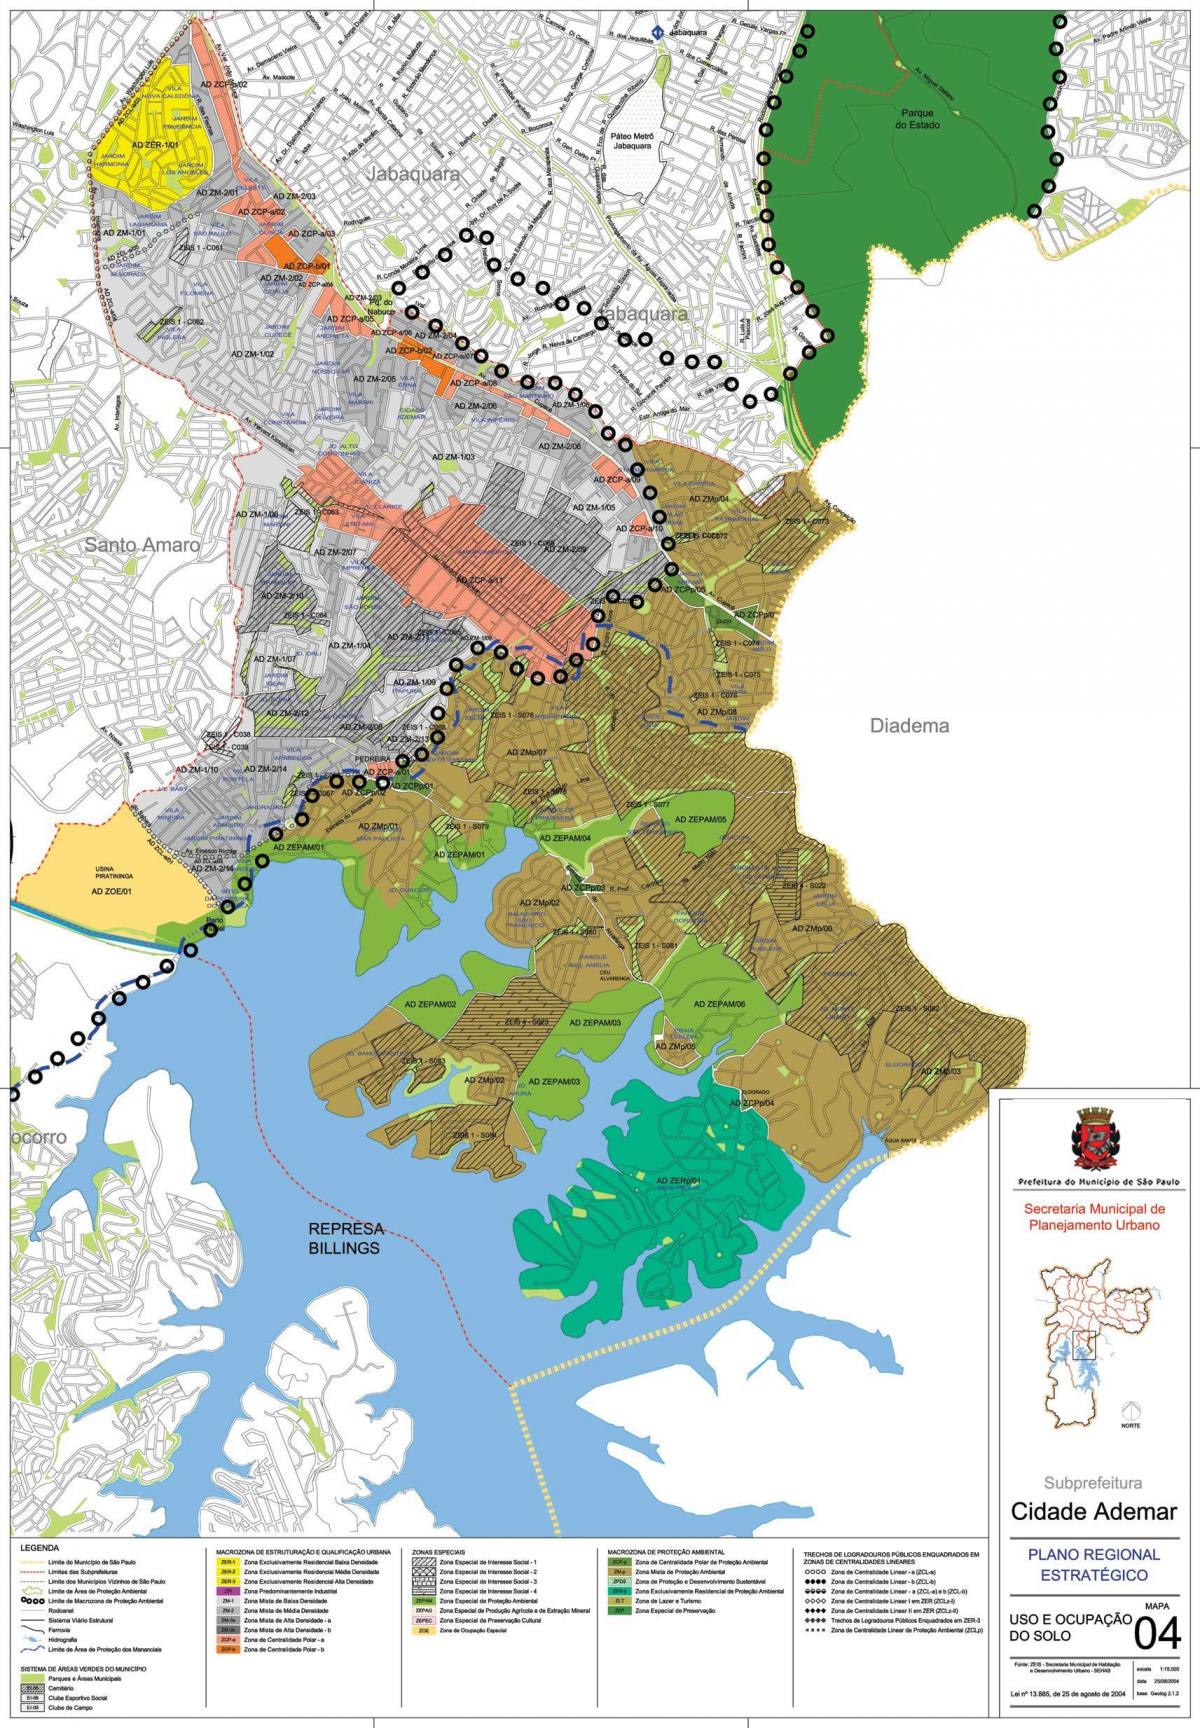 Mapa Cidade Ademar São Paulo - zábor půdy